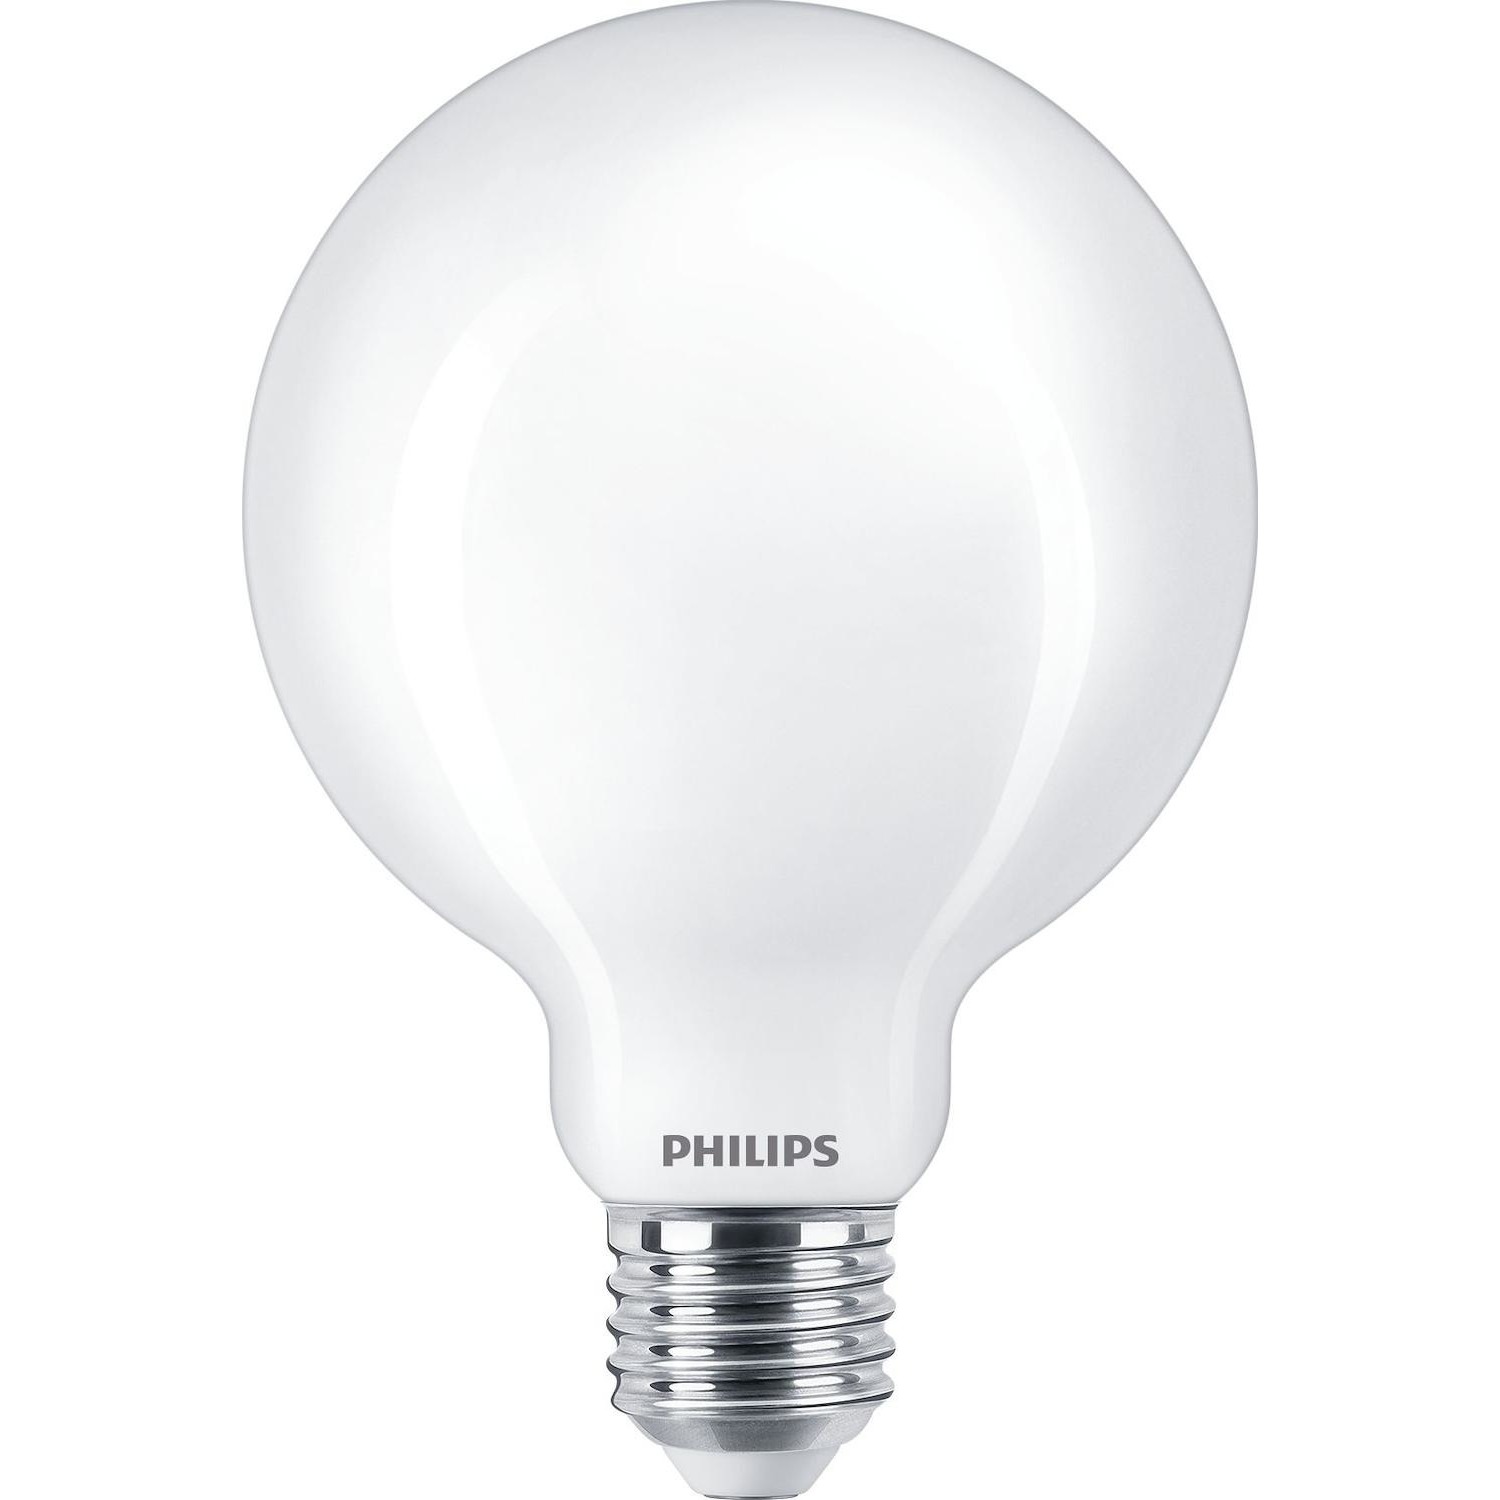 Immagine per Lampadina Philips globo satinata E27 60W da DIMOStore